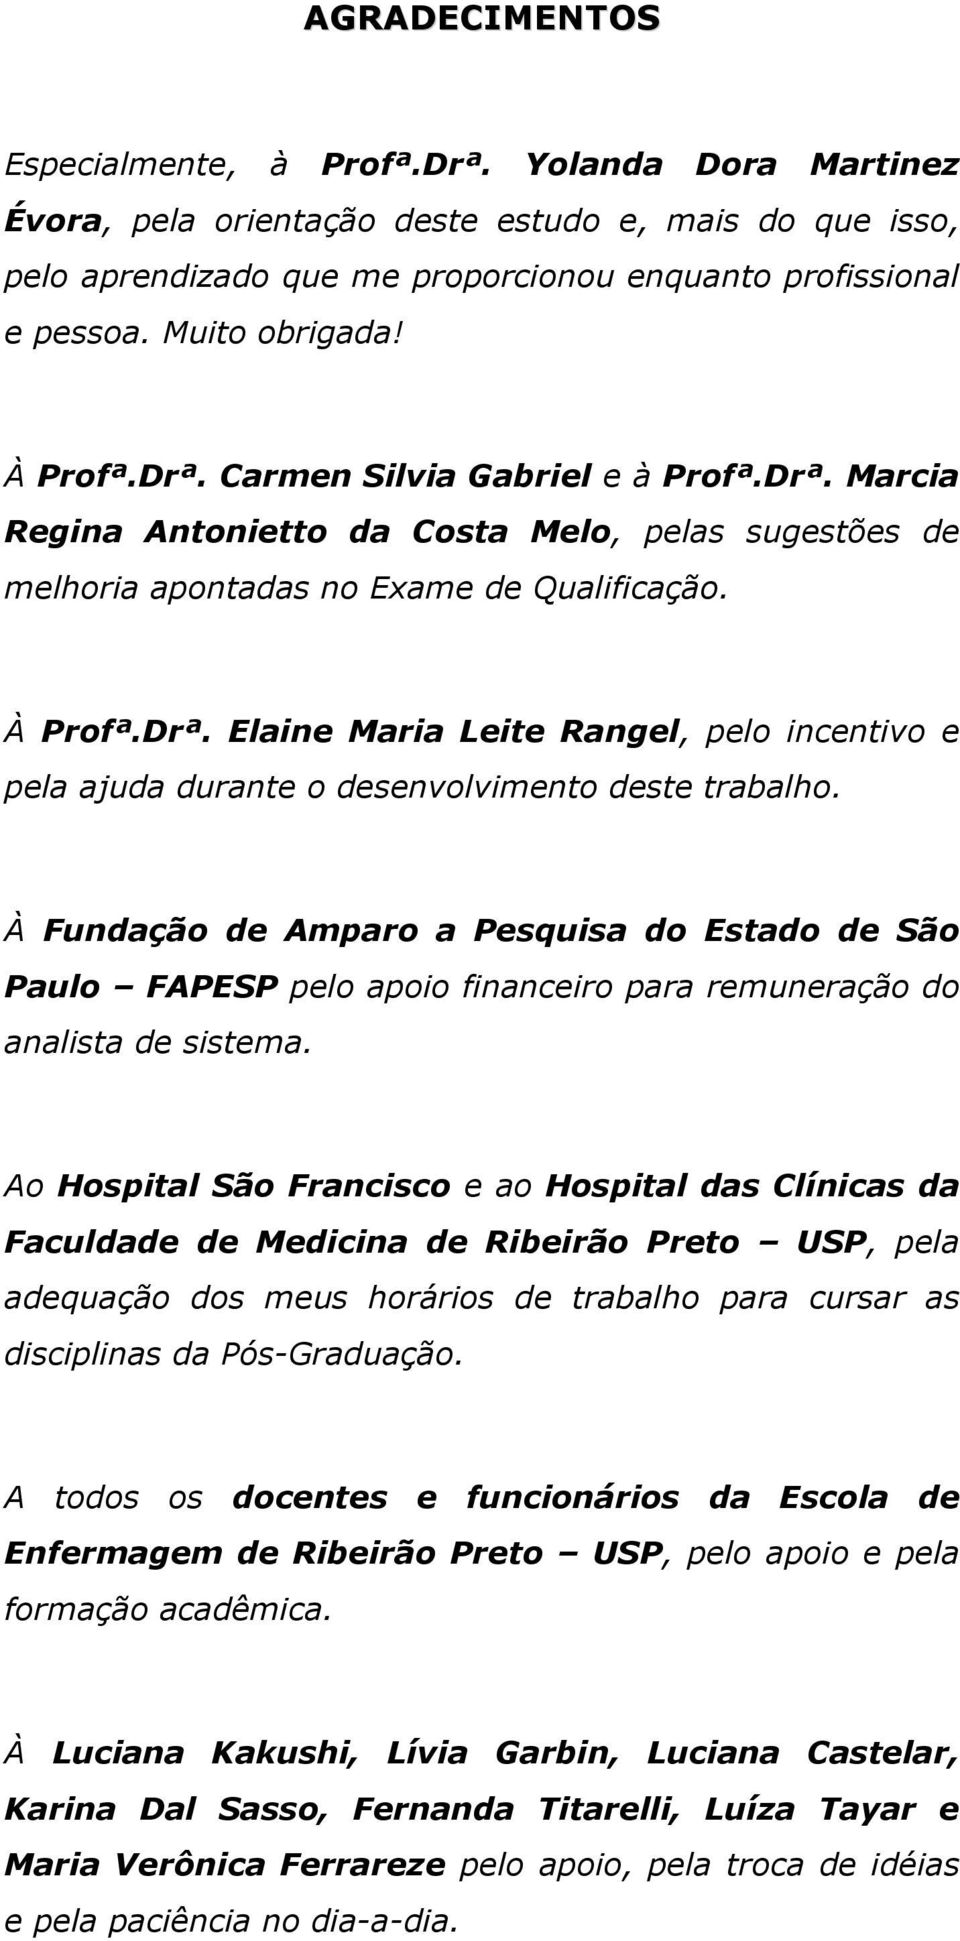 À Fundação de Amparo a Pesquisa do Estado de São Paulo FAPESP pelo apoio financeiro para remuneração do analista de sistema.